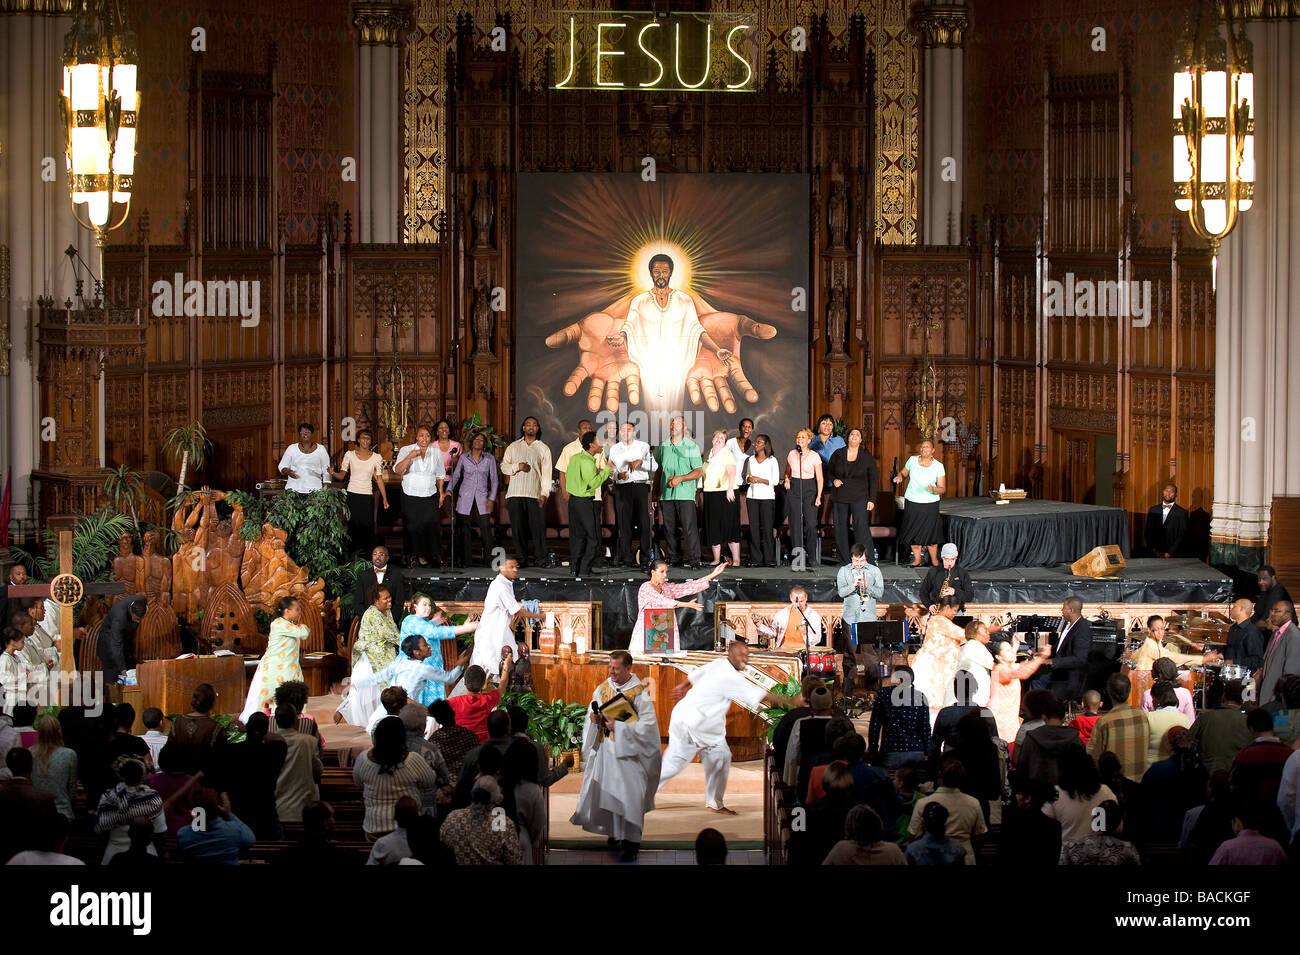 United States, Illinois, Chicago, Sunday service at the Saint Sabina catholic church Stock Photo